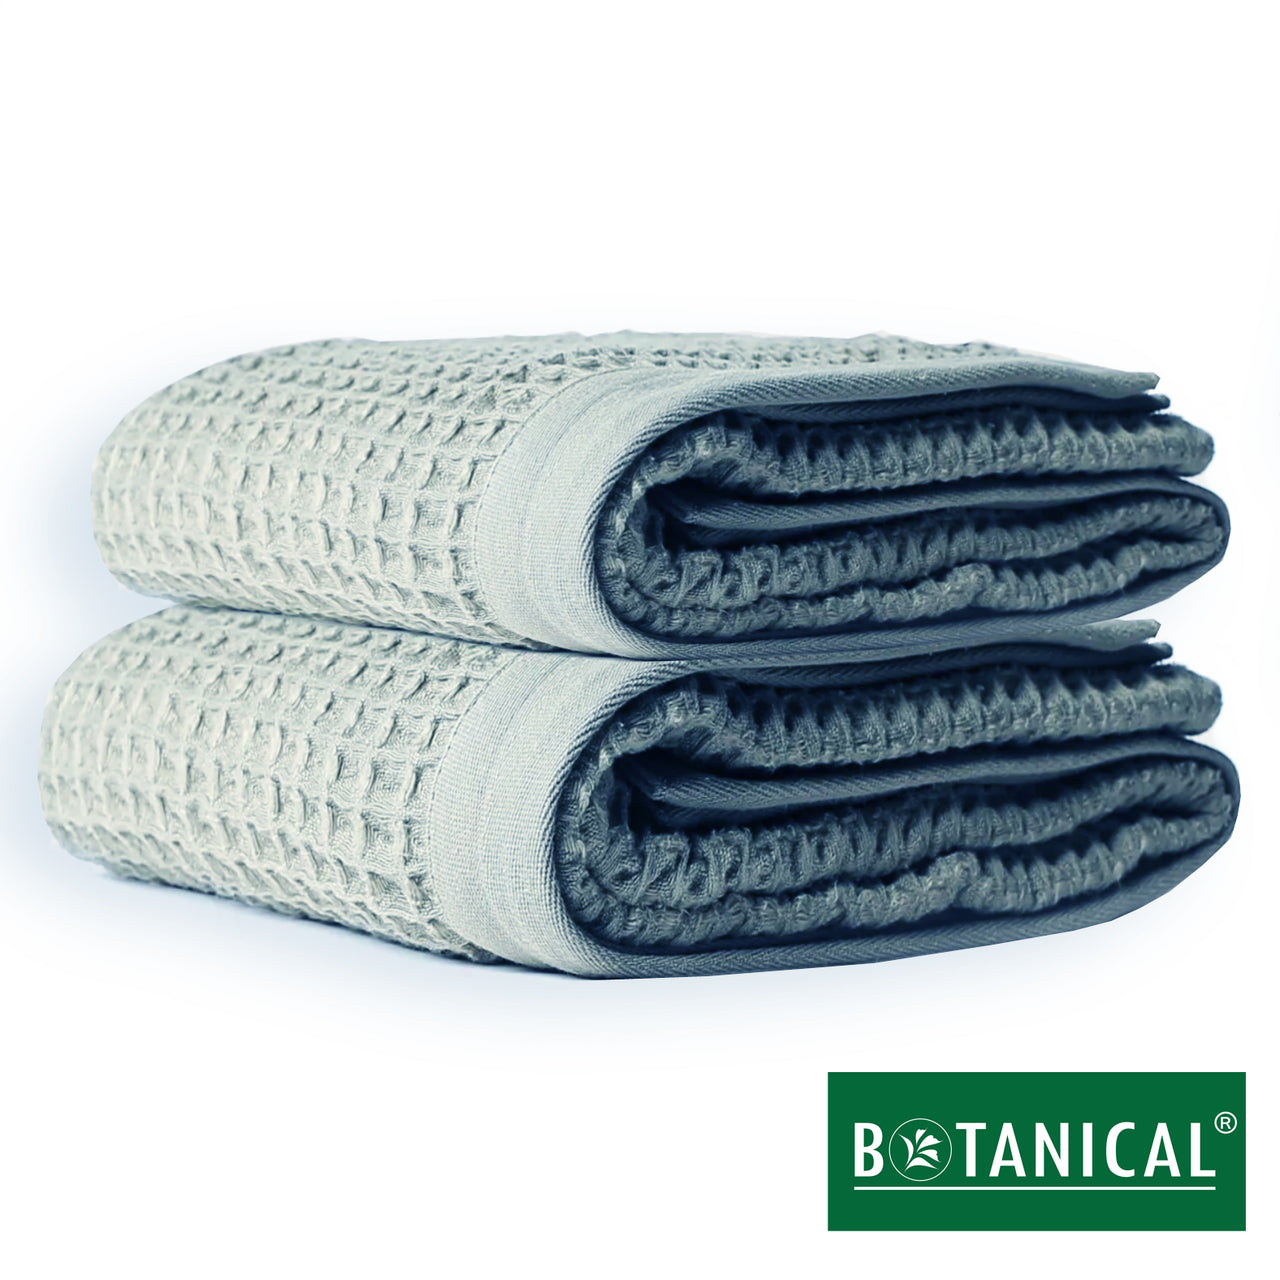 BOTANICAL SPA™ BATH TOWELS SET - PREMIUM DOUBLE WEAVE